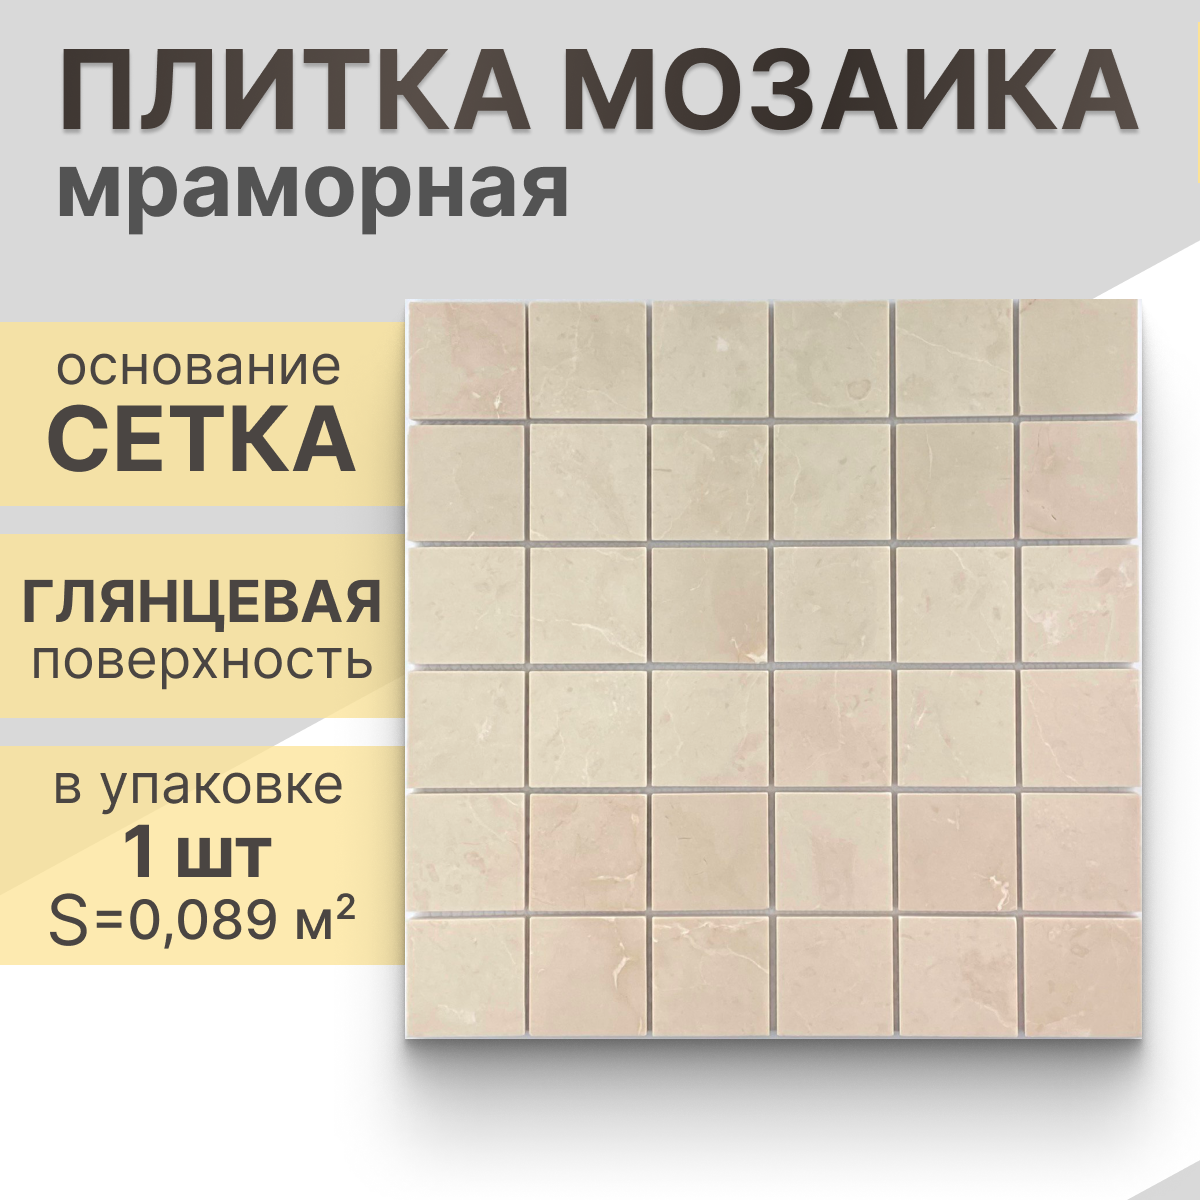 Мозаика (мрамор) NS mosaic Kp-760 29.8X29,8 см 1 шт (0.089 м²)